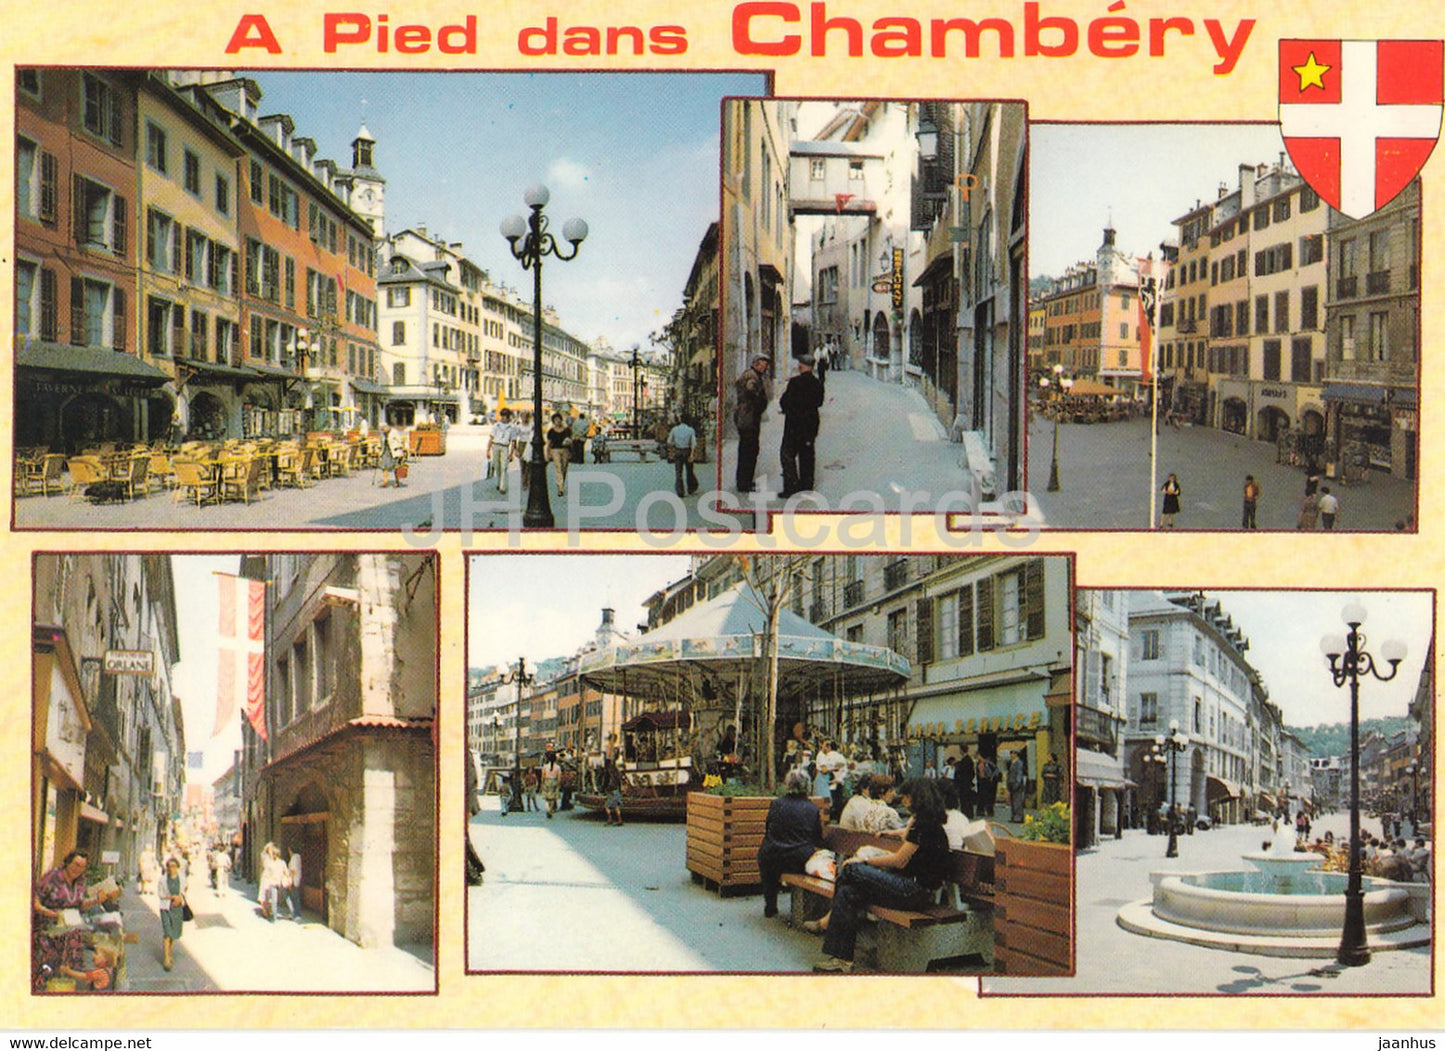 A Pied dans Chambery - Saint Leger - la rue Croix d'Or - rue Basse du Chateua - France - unused - JH Postcards